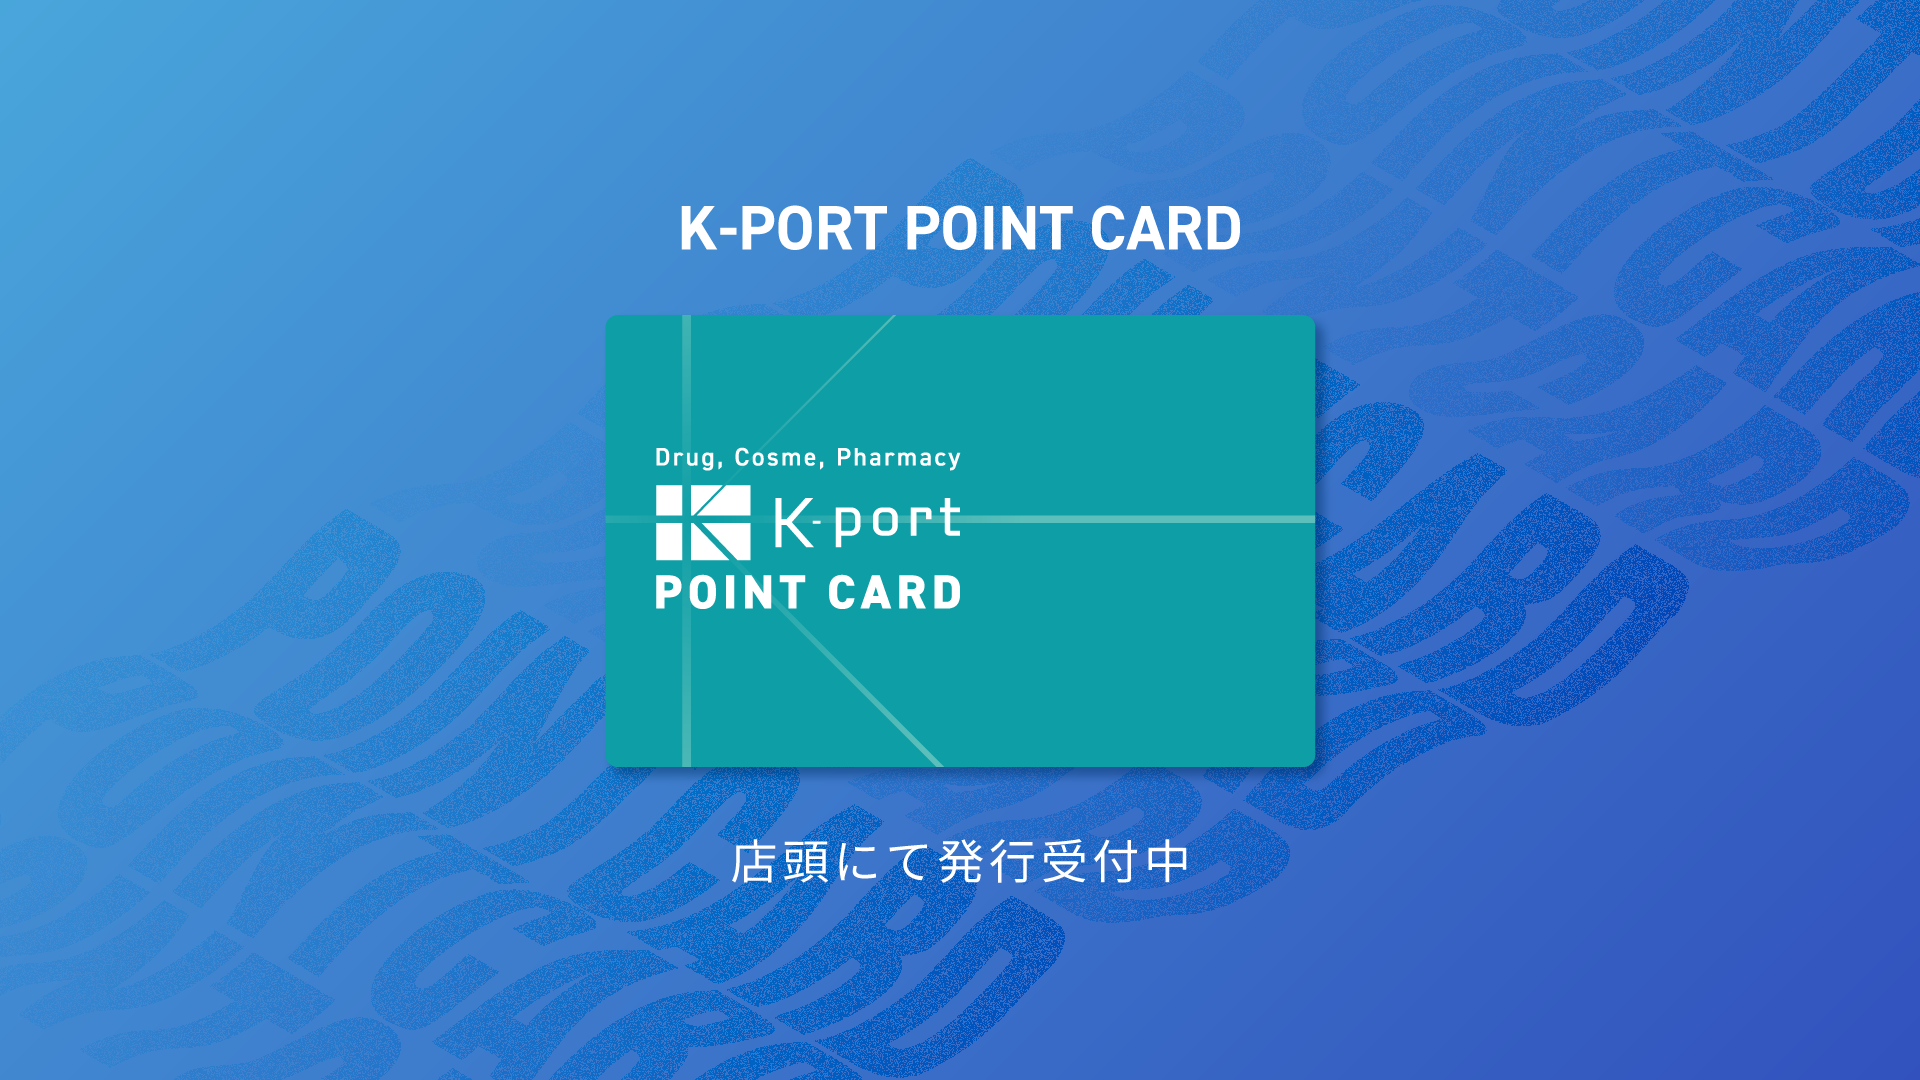 ケイポートポイントカードサービスのメインビジュアル。